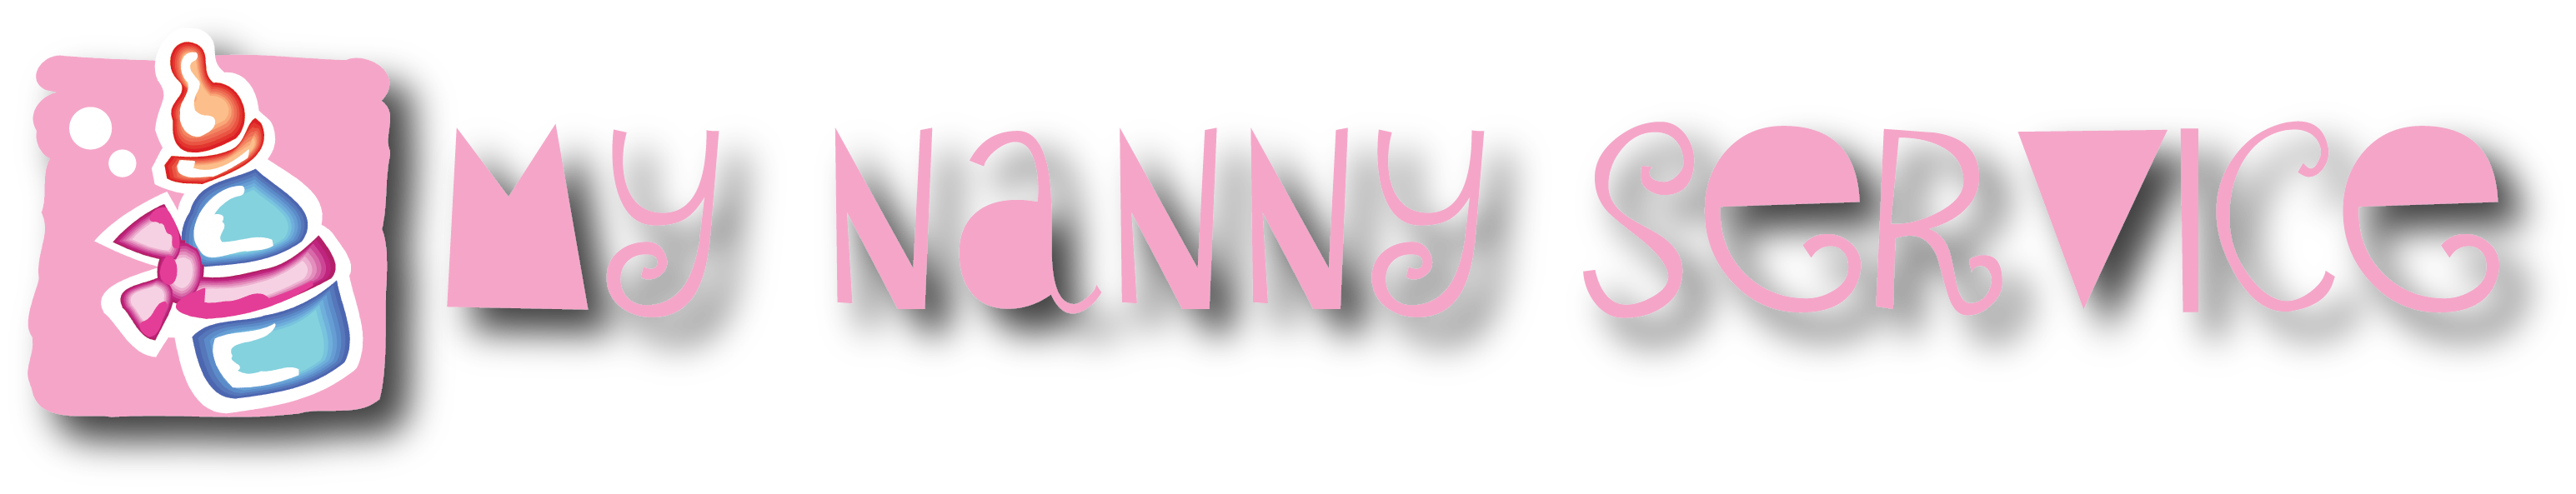 My Nanny Service logo